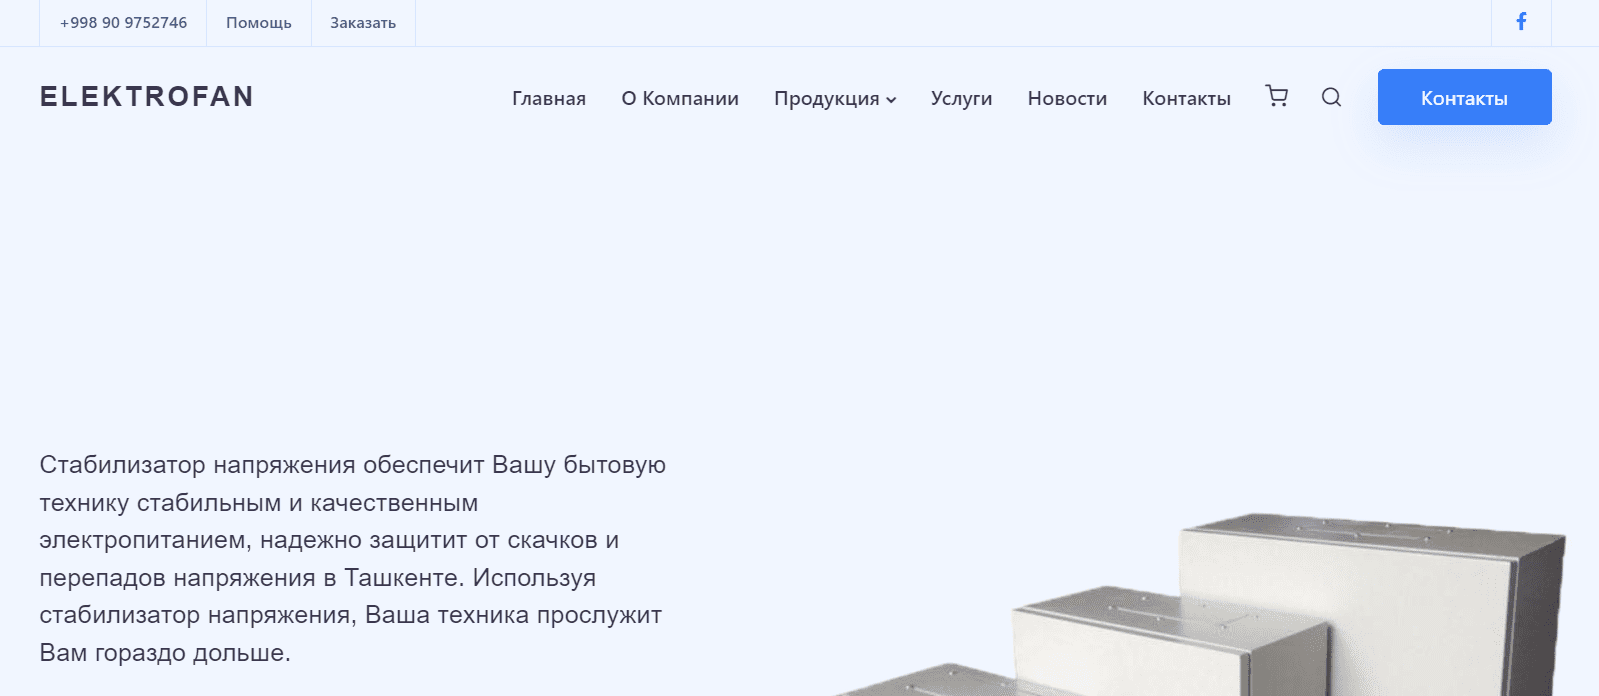 Elektrofan (stabilizator.uz) - официальный сайт